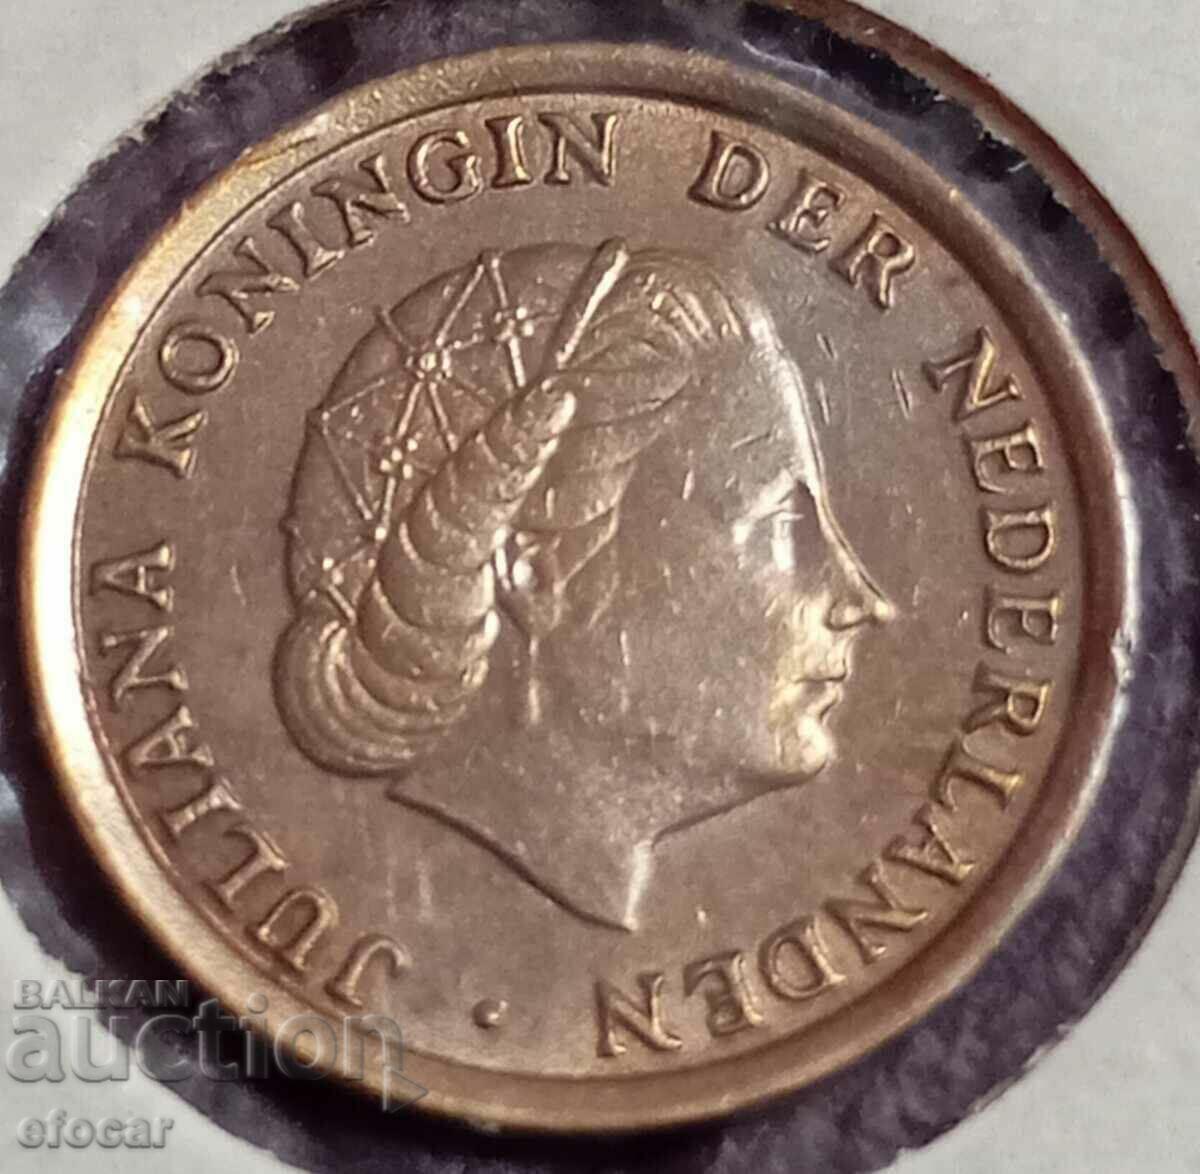 1 цент Холандия 1970